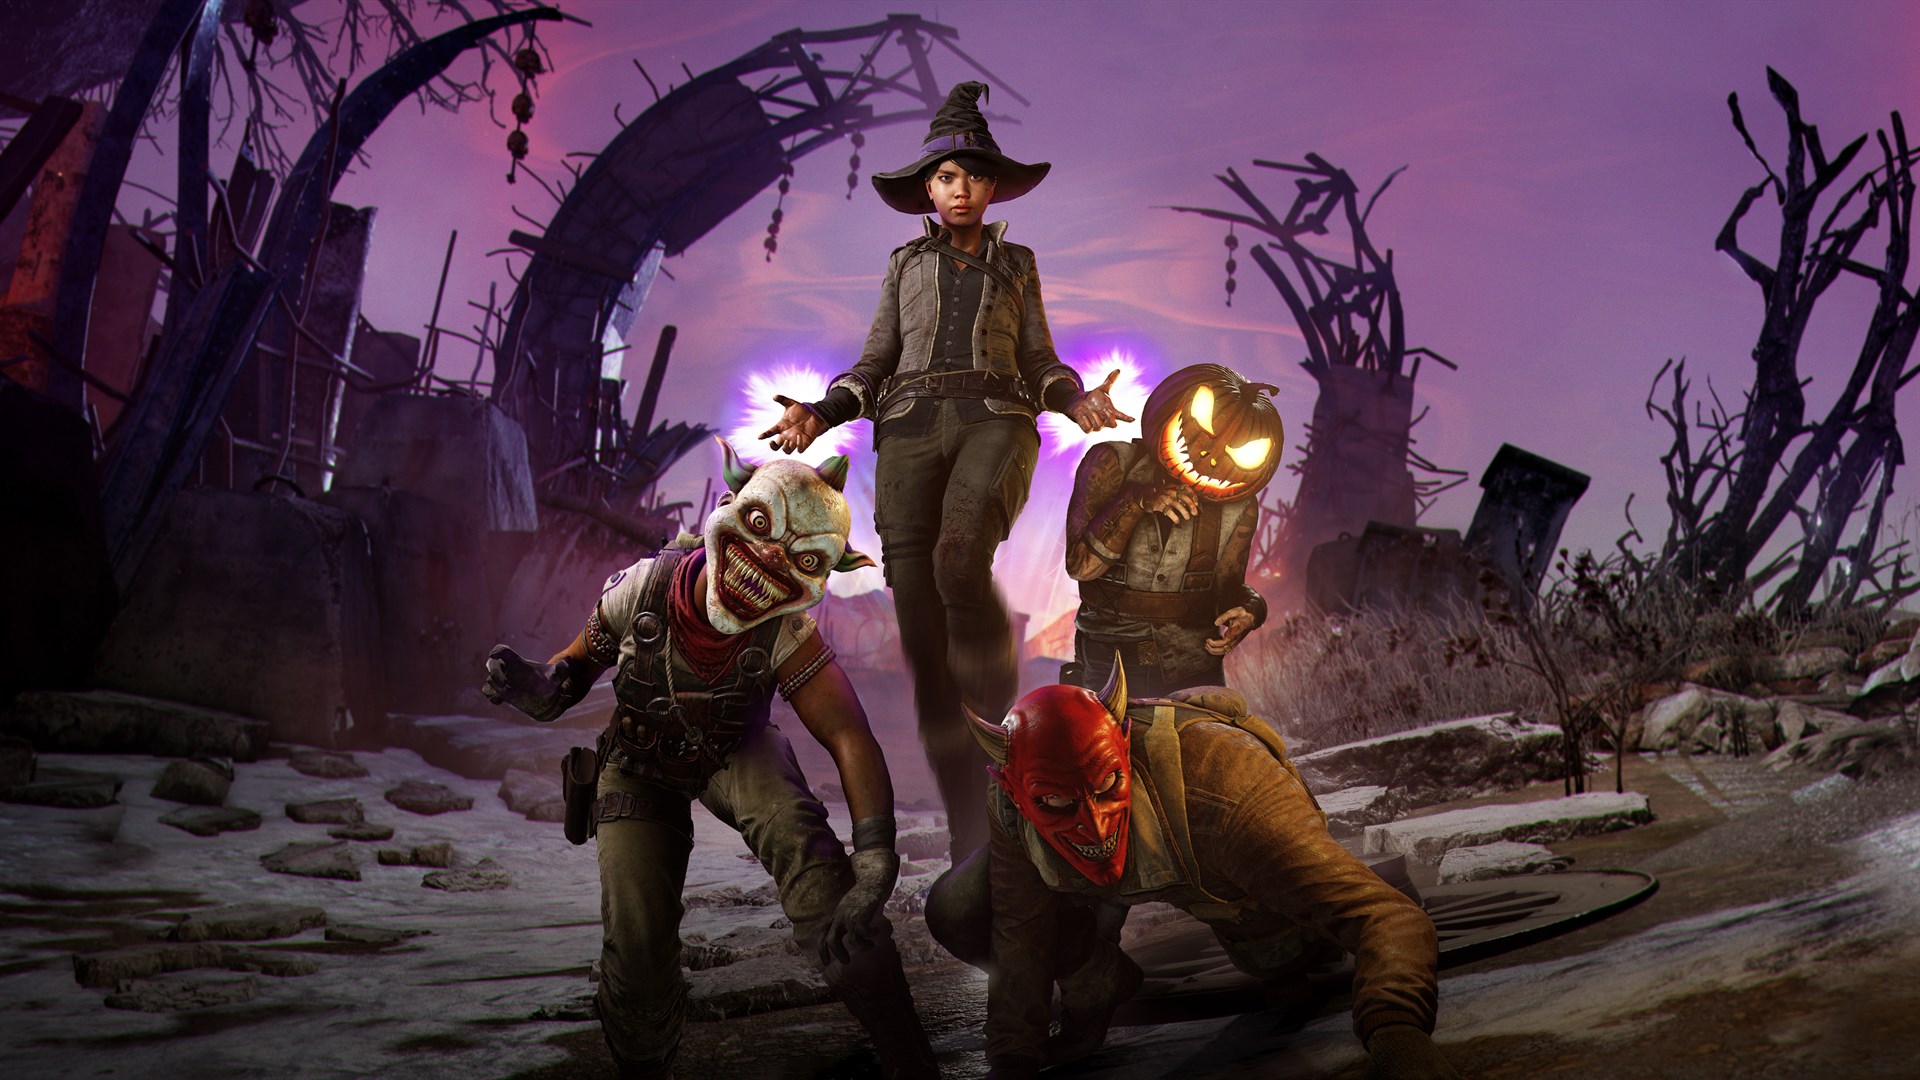 Zombie Army 4: Halloween Headgear Bundle